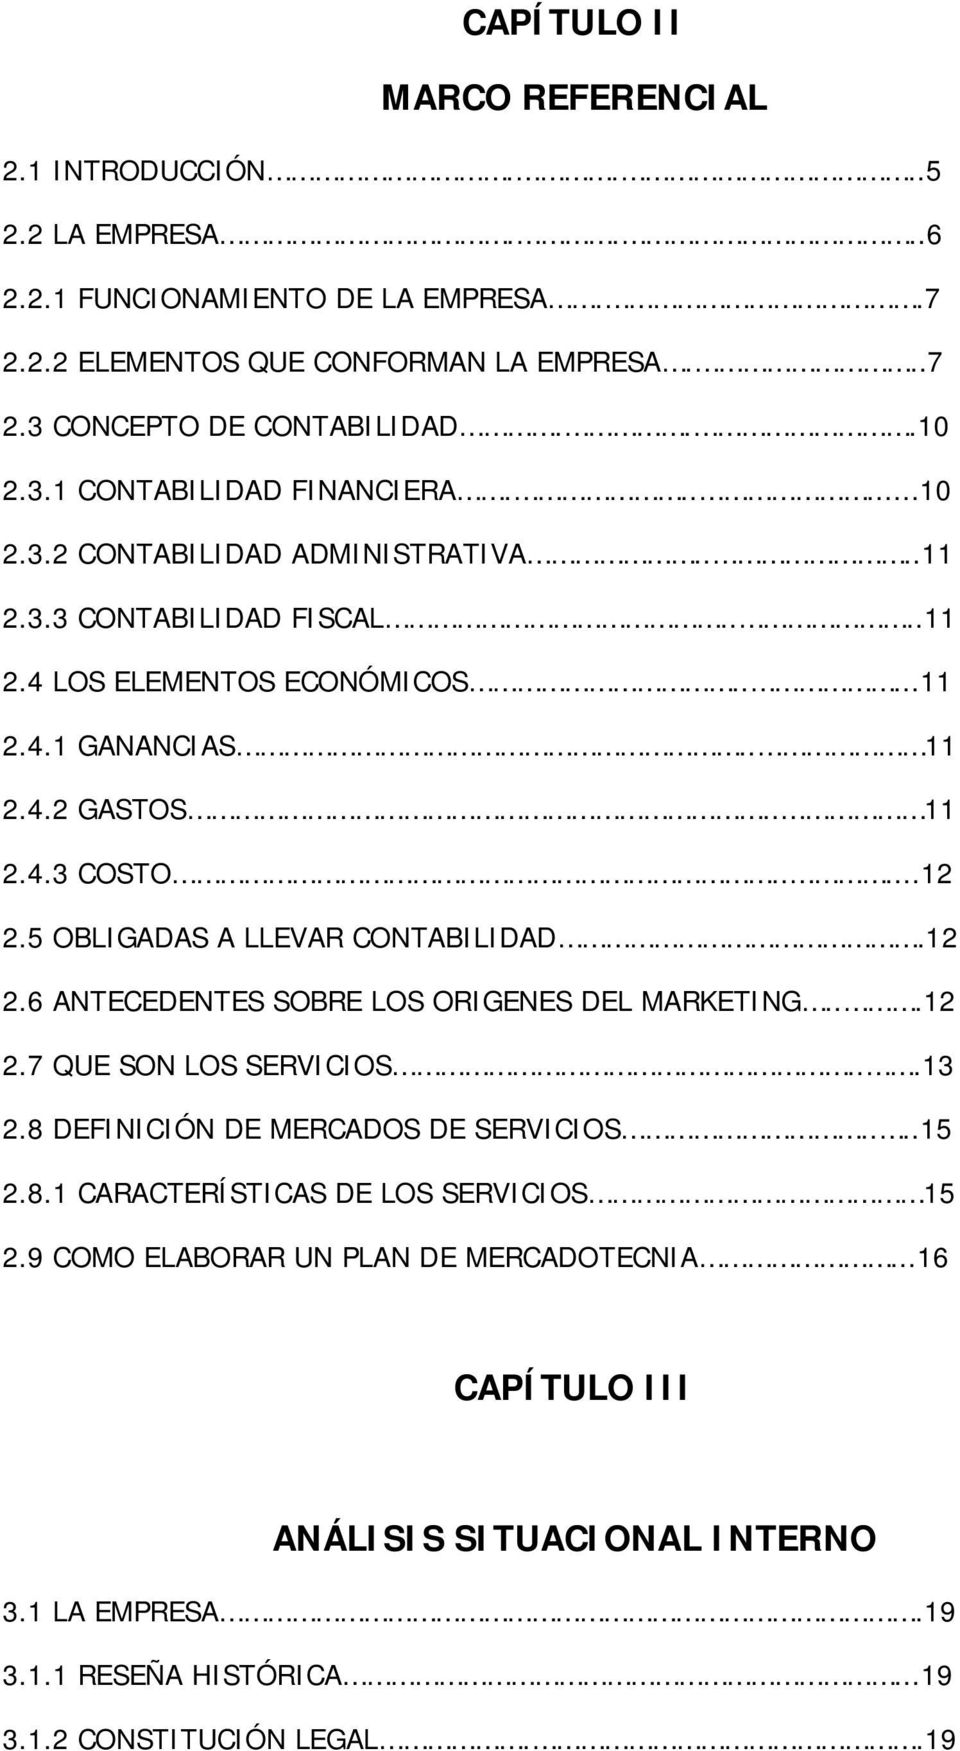 5 OBLIGADAS A LLEVAR CONTABILIDAD.12 2.6 ANTECEDENTES SOBRE LOS ORIGENES DEL MARKETING...12 2.7 QUE SON LOS SERVICIOS...13 2.8 DEFINICIÓN DE MERCADOS DE SERVICIOS....15 2.8.1 CARACTERÍSTICAS DE LOS SERVICIOS 15 2.